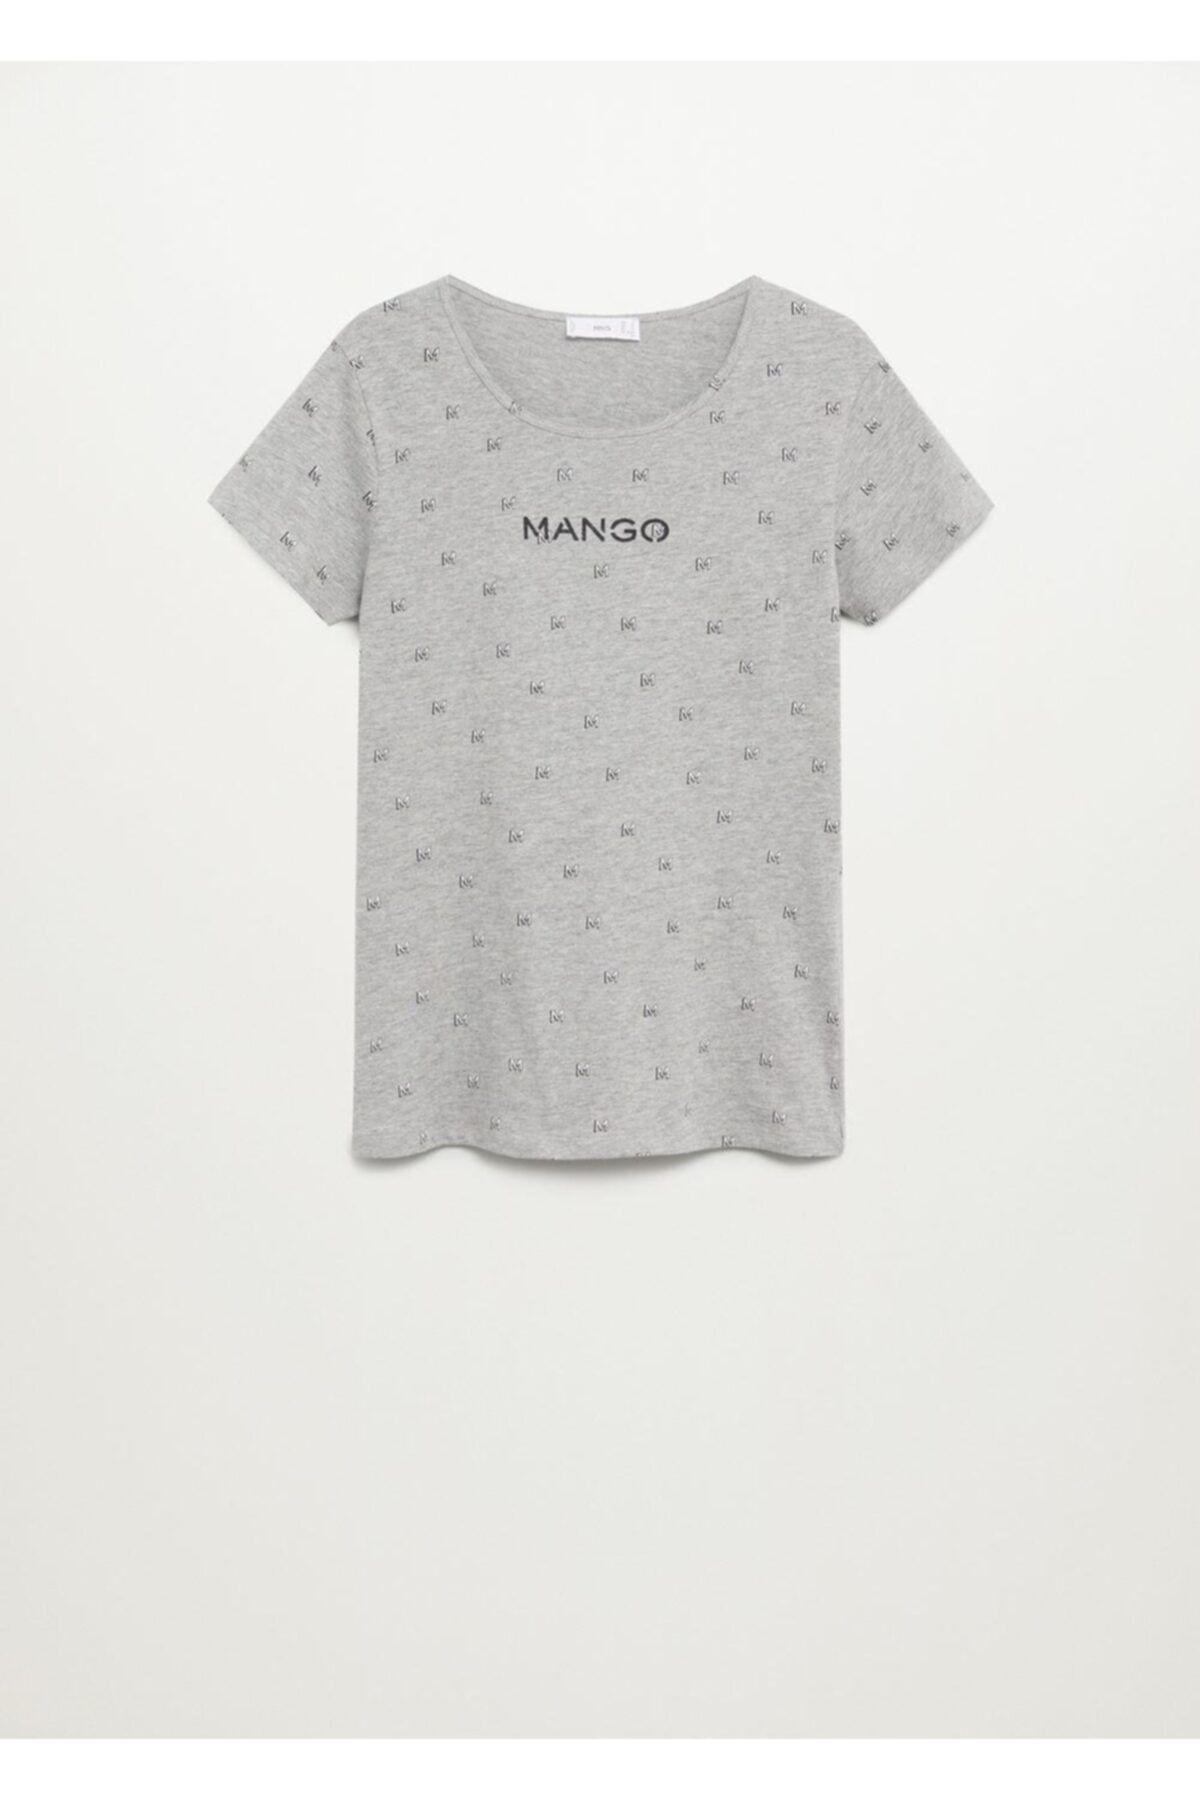 MANGO Kadın Gri Logo Baskılı Tişört